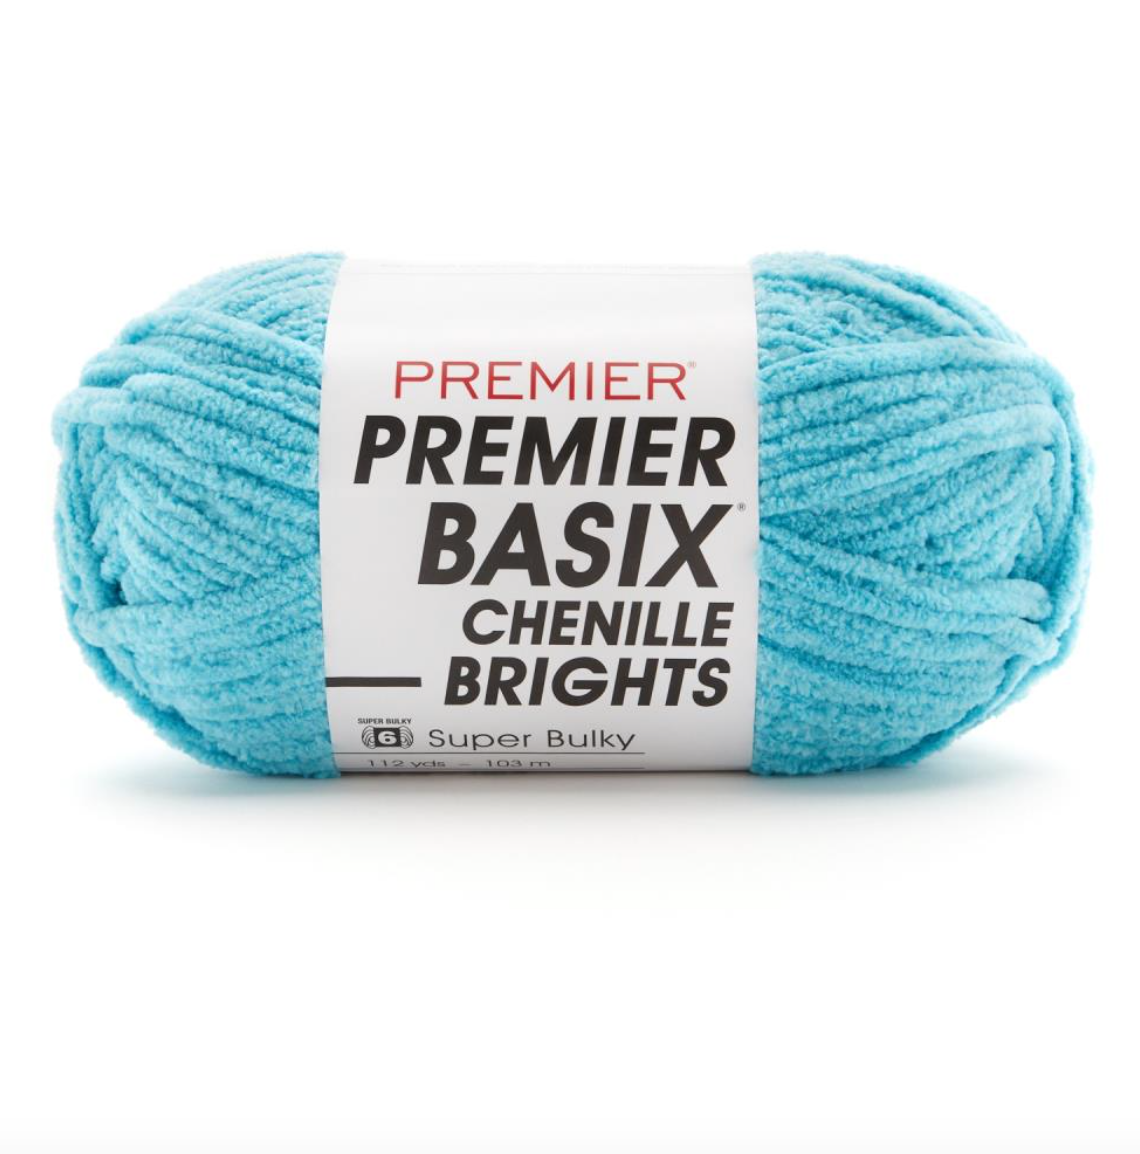 NEW YARN: Premier Basix Chenille Brights - Premier Yarns